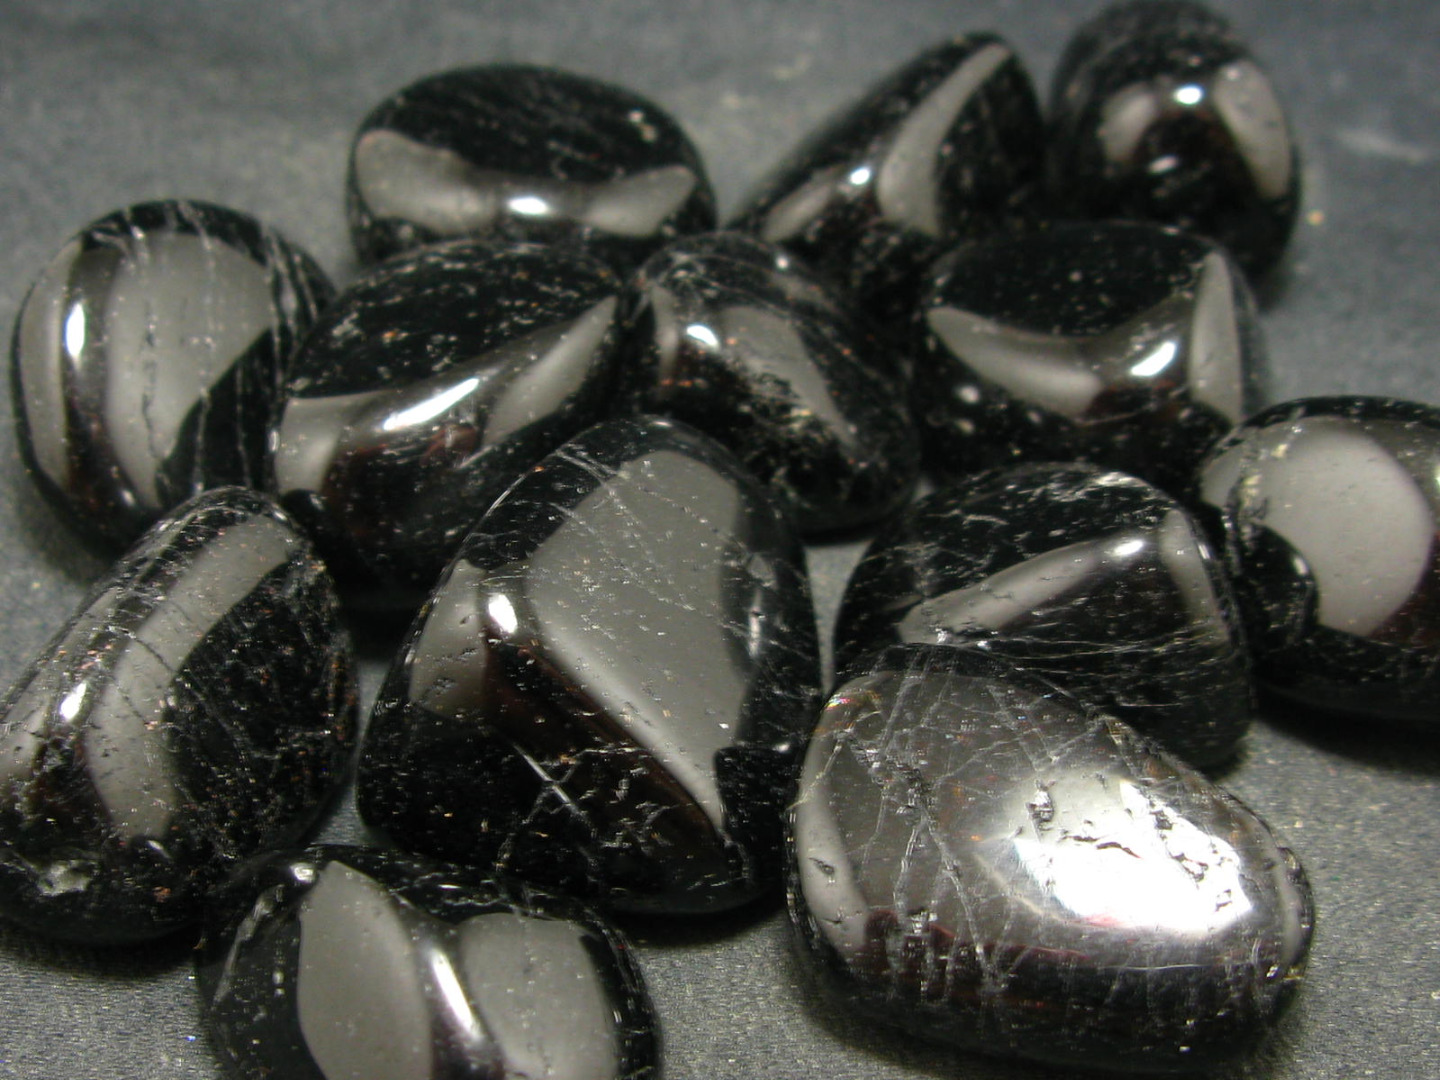 đá sapphire đen cho người sinh năm 2004